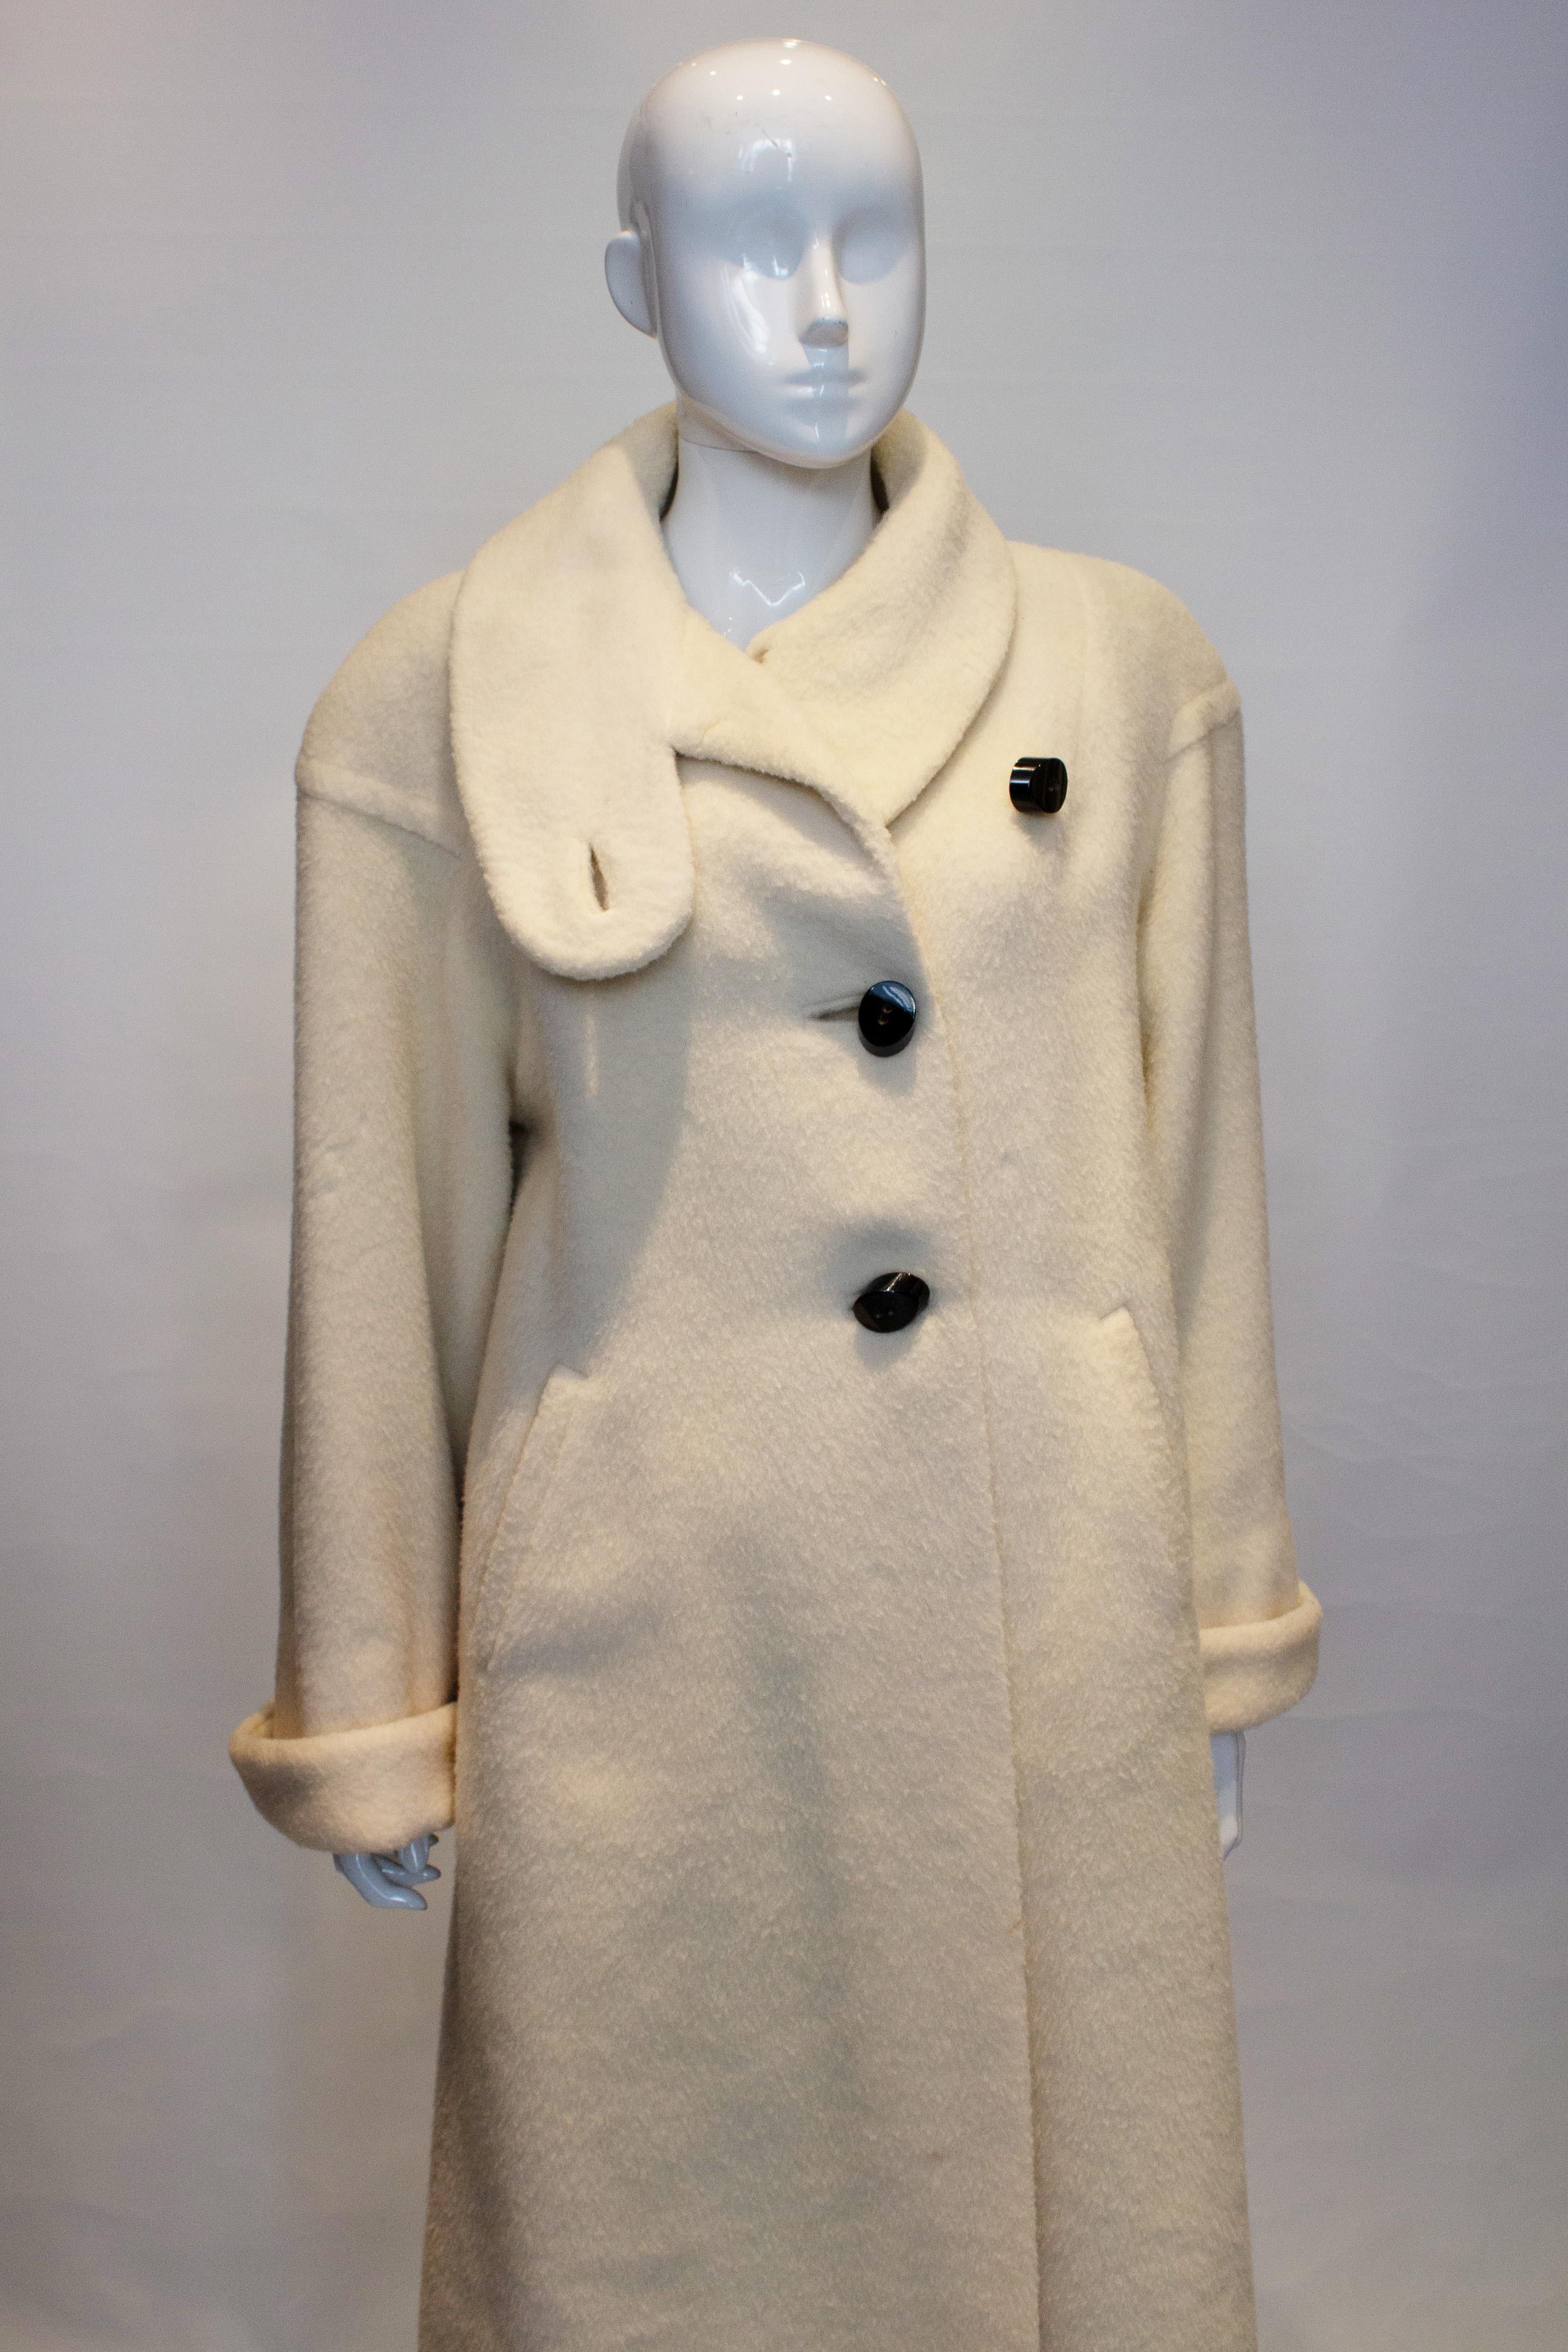 Ein wunderschöner weißer Vintage-Mantel mit wunderschönen übergroßen Knöpfen. Der Mantel hat einen Stehkragen, Taschen auf beiden Seiten und umgeschlagene Manschetten. Es ist vollständig gefüttert.
Maße Büste bis zu 46'', Länge 48''